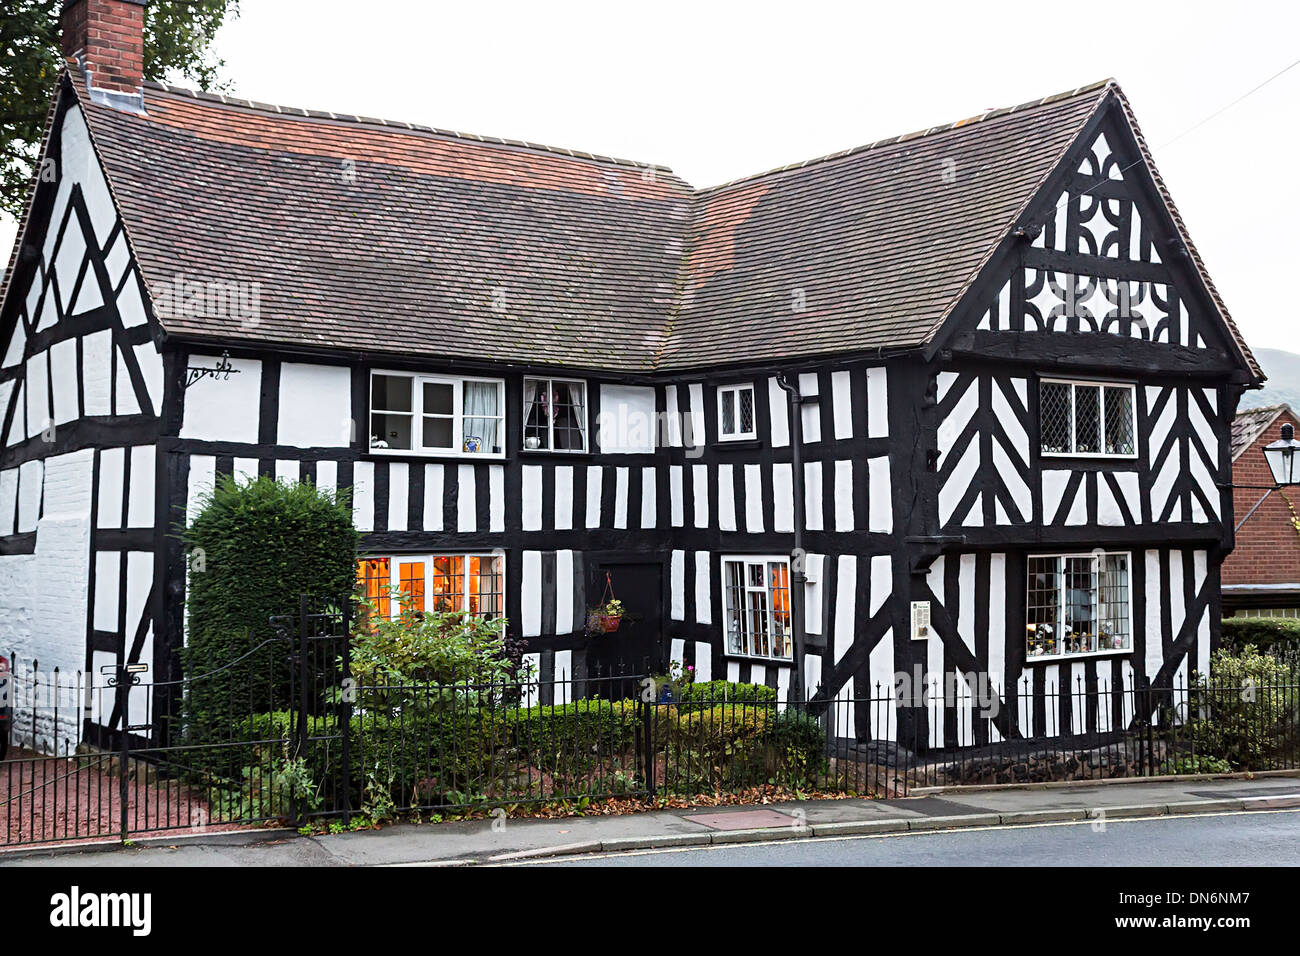 Maison à colombages de style Tudor, Church Stretton, Shropshire Banque D'Images